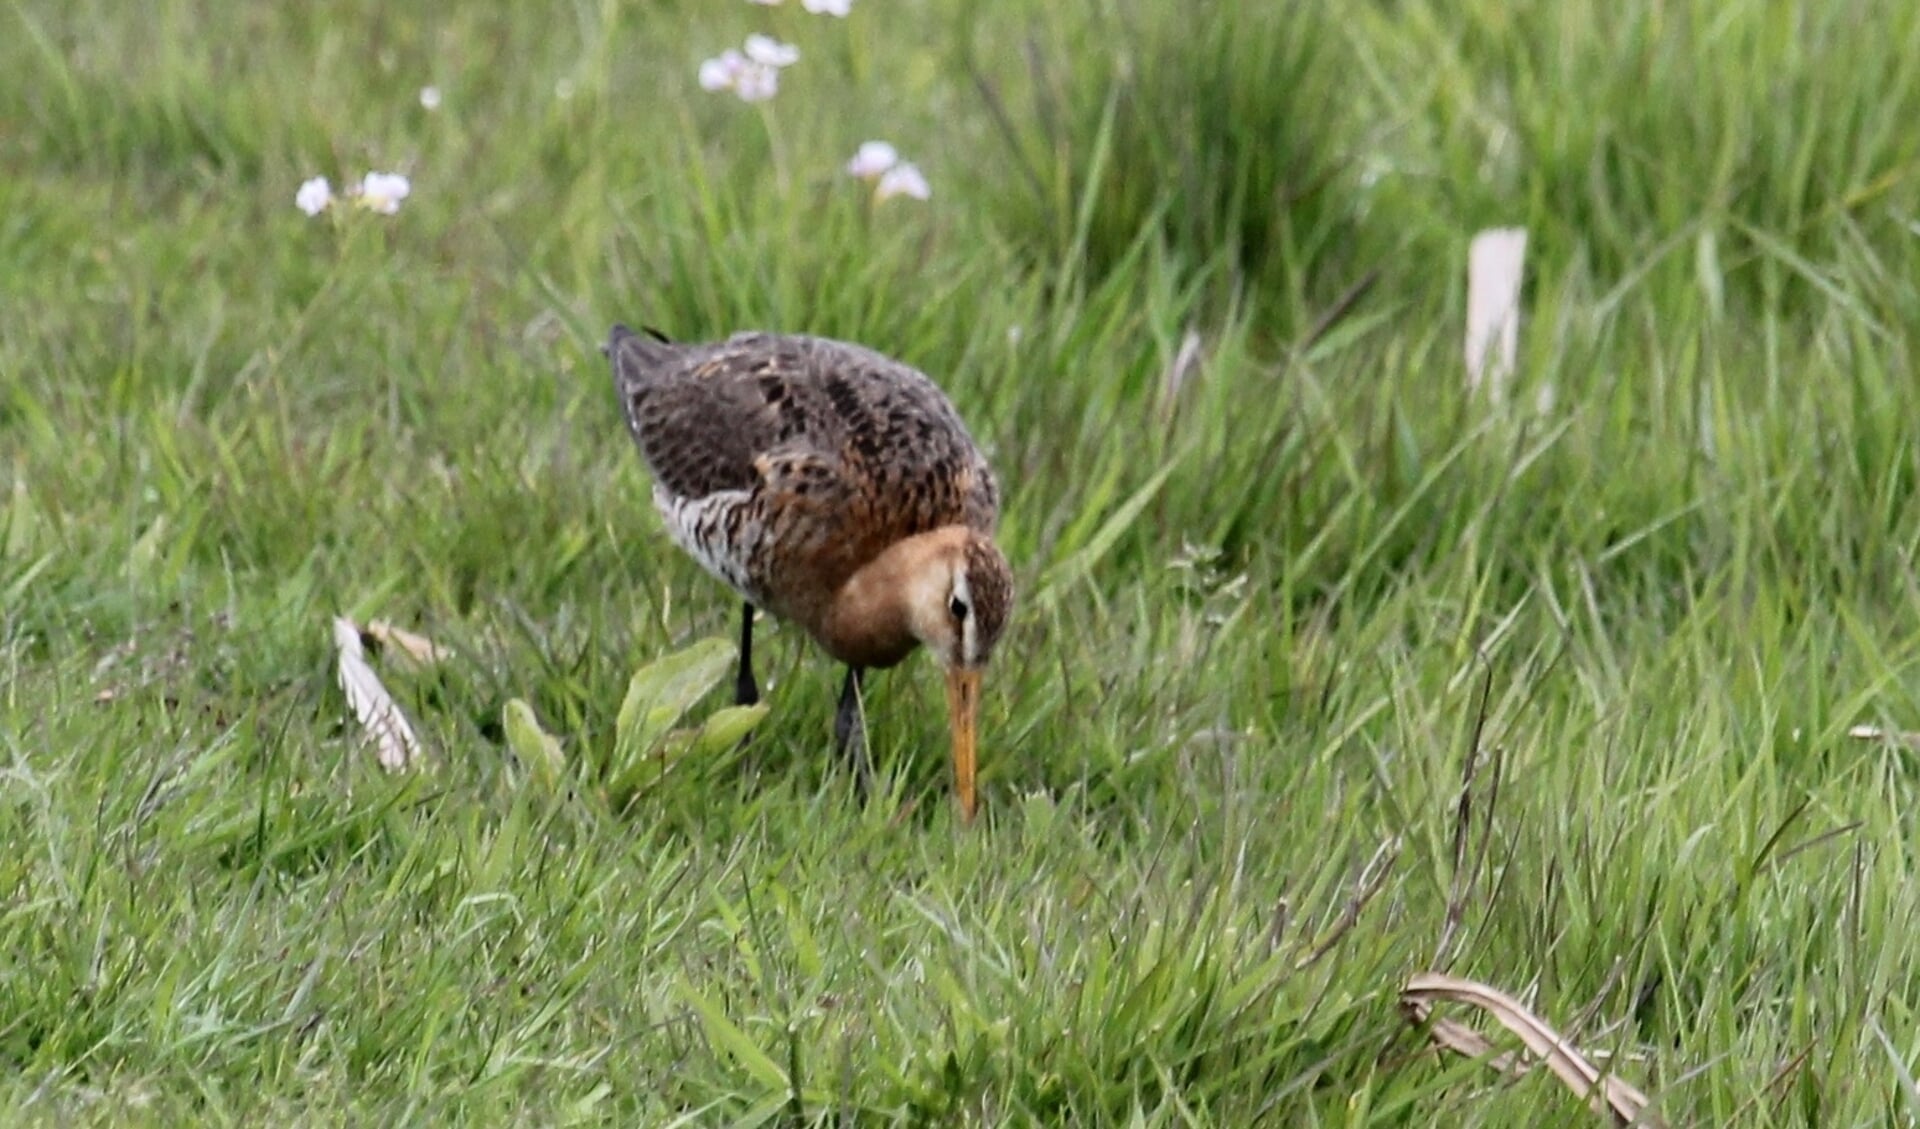 Links het beeld de Verrekijker. Rechts een naar voedsel borende Grutto in het weidevogelgebied het Eldikse Veld. (foto: Henk van der Kooij)